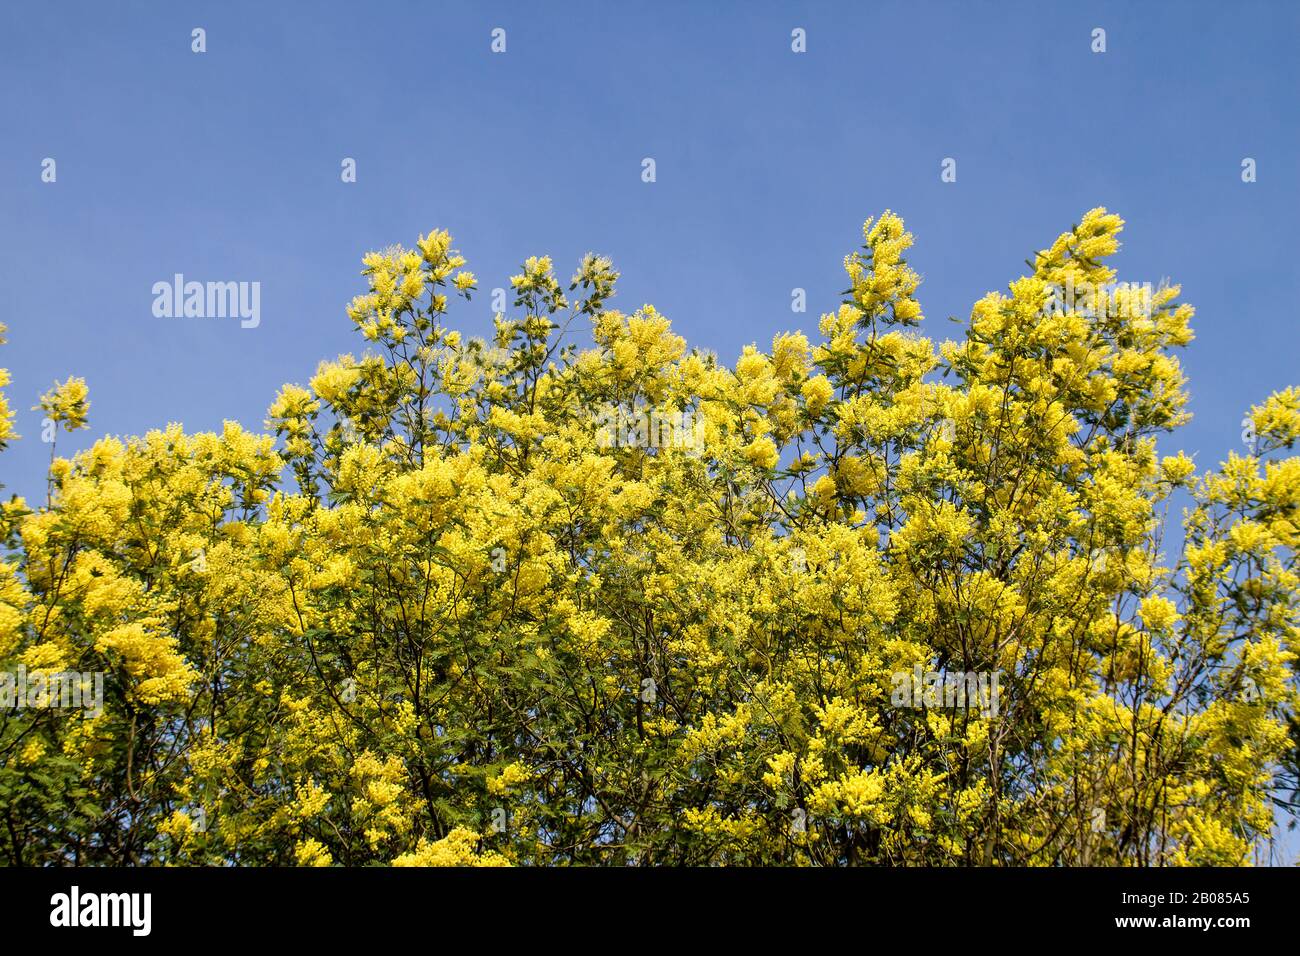 Acacia dealbata tree yellow flowers blooming Stock Photo